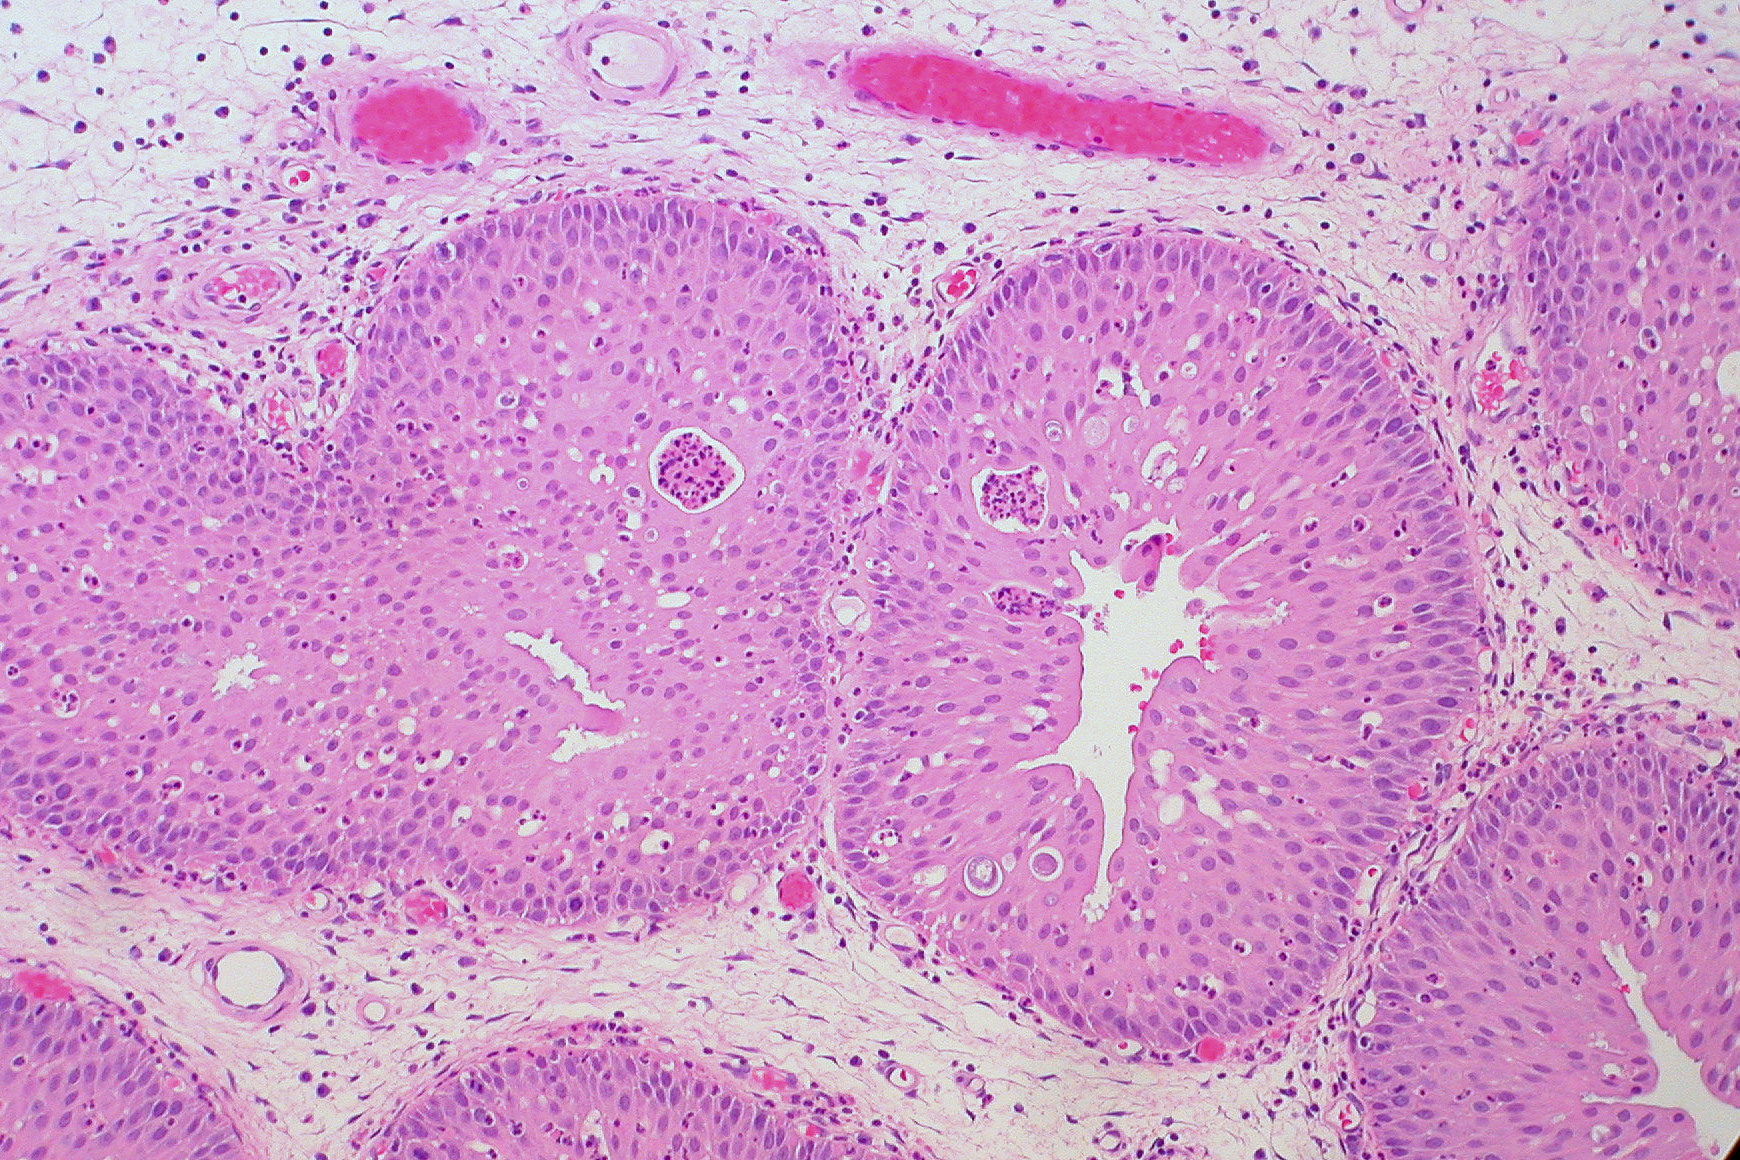 sinonasal papilloma cylindrical cell type